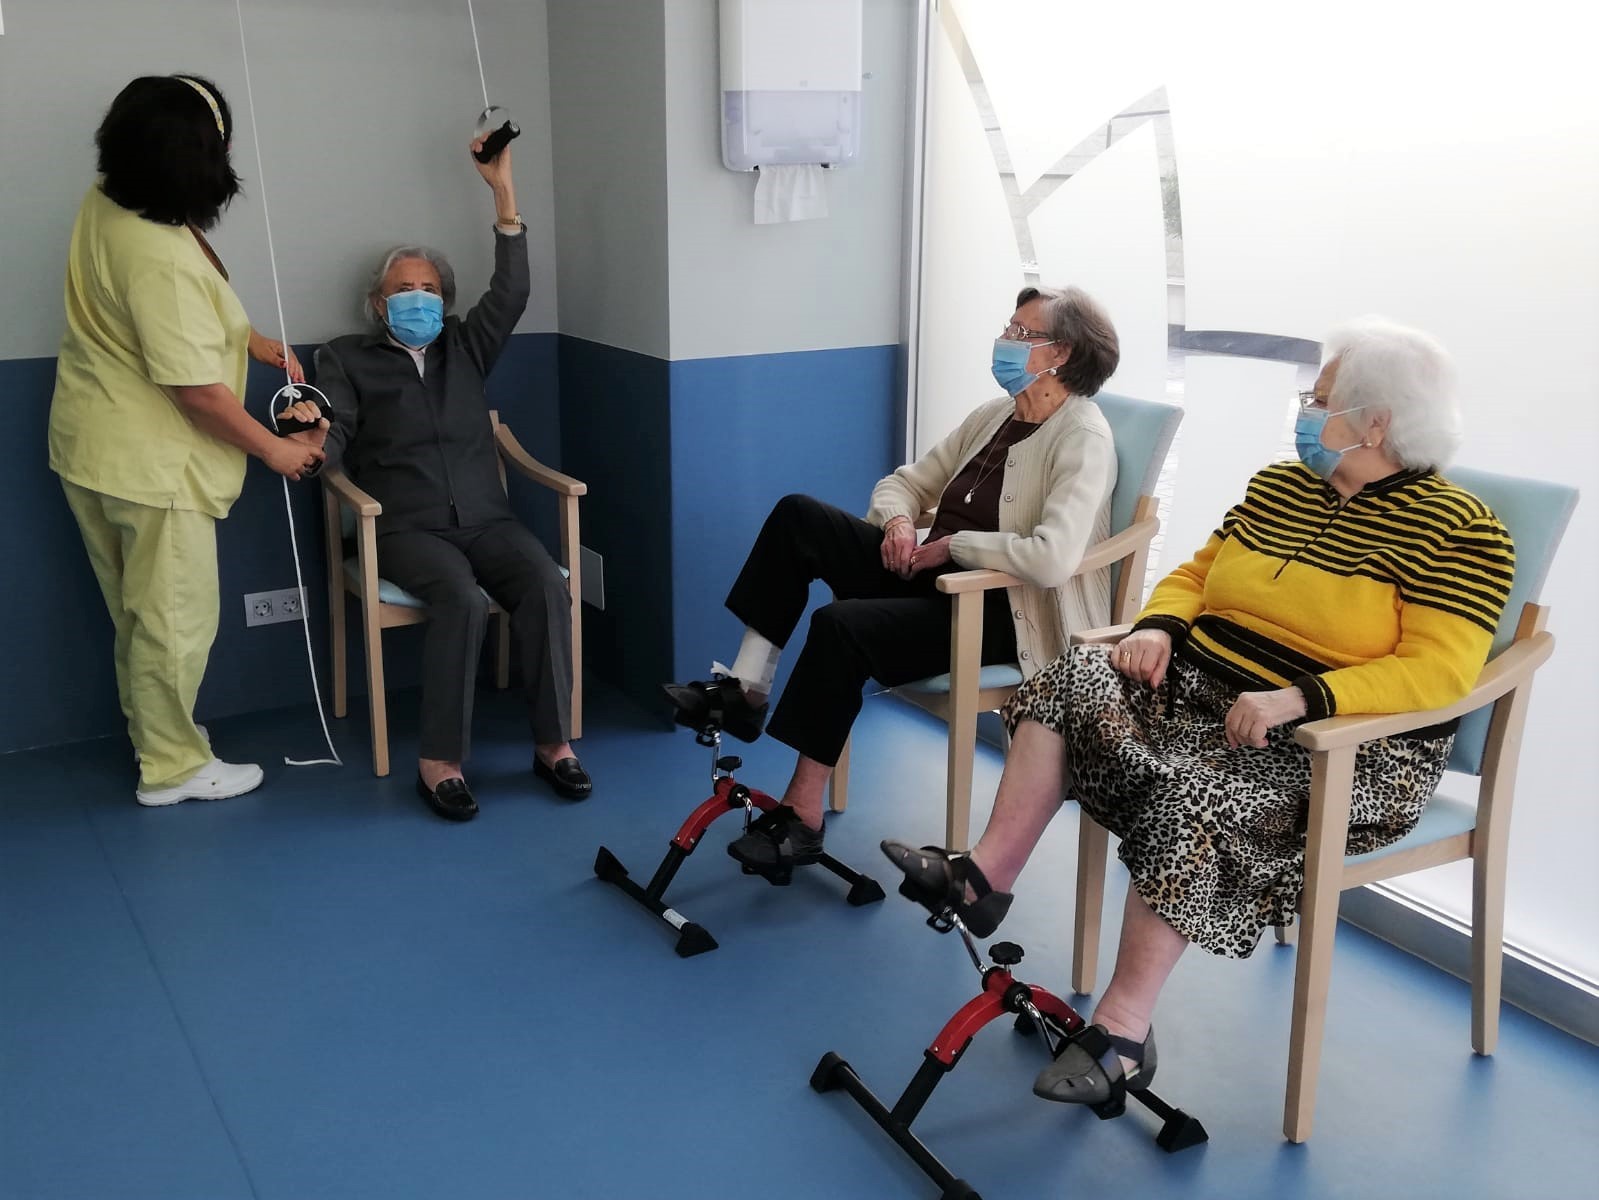 Fisioterapeutas geriátricos, esenciales para mantener la autonomía y capacidad cognitiva de las personas mayores